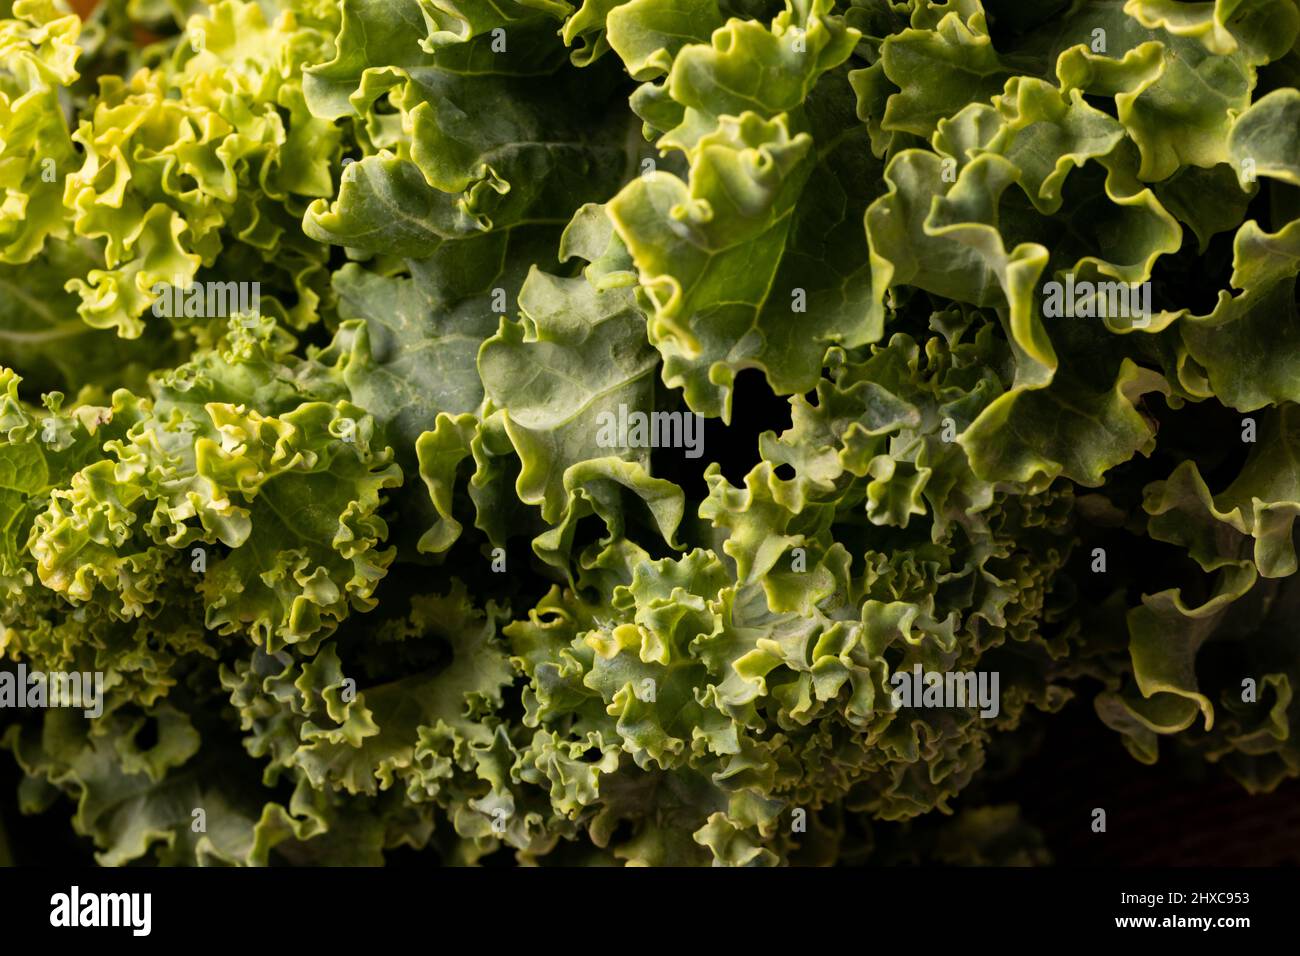 Full frame shot of fresh green kale leaf vegetable Stock Photo